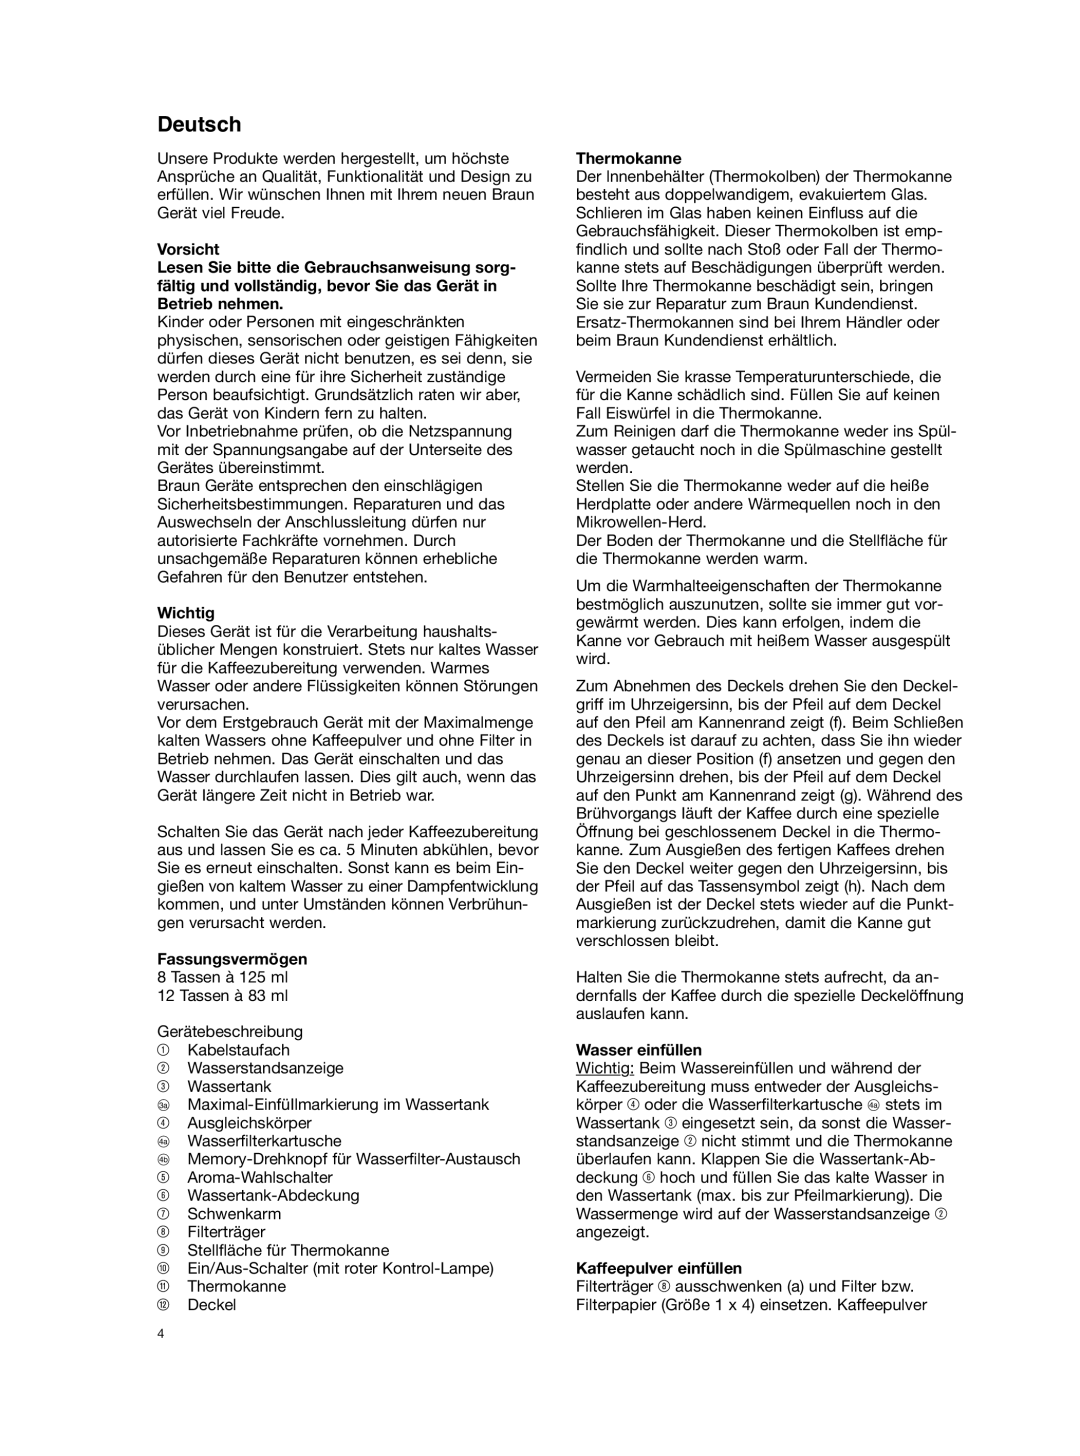 Braun KF 177 manual Deutsch, Vorsicht, Wichtig, Fassungsvermögen 8 Tassen à 125 ml 12 Tassen à 83 ml, Thermokanne 